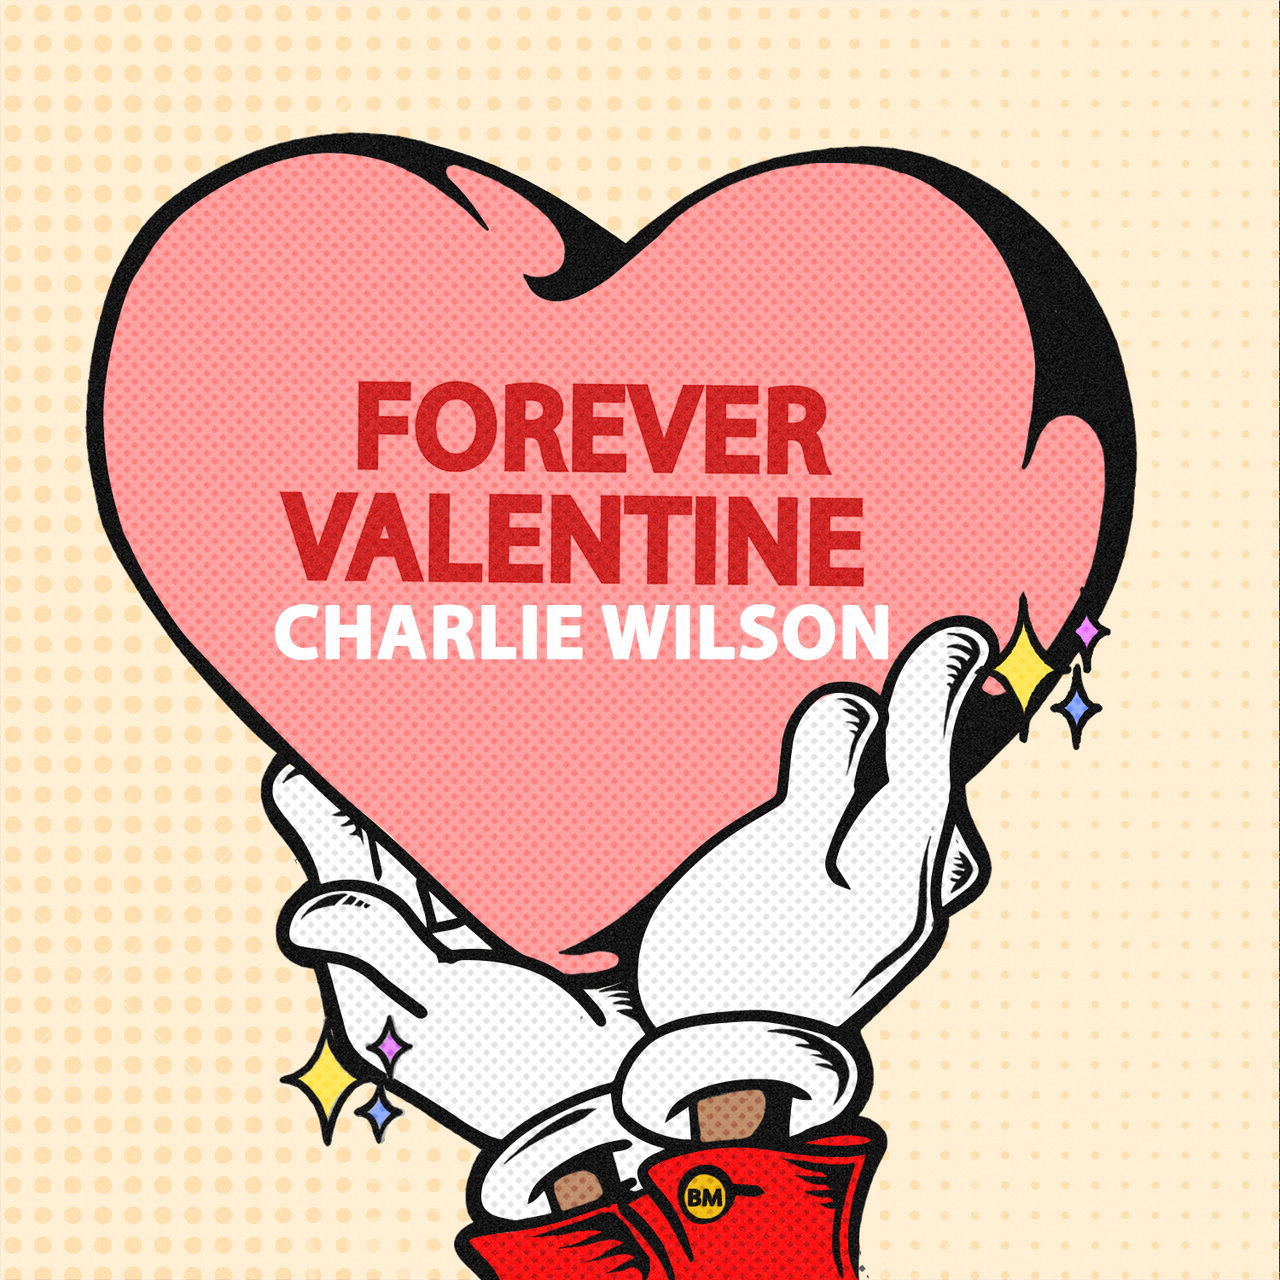 Charlie Wilson - Forever Valentine (Cover)